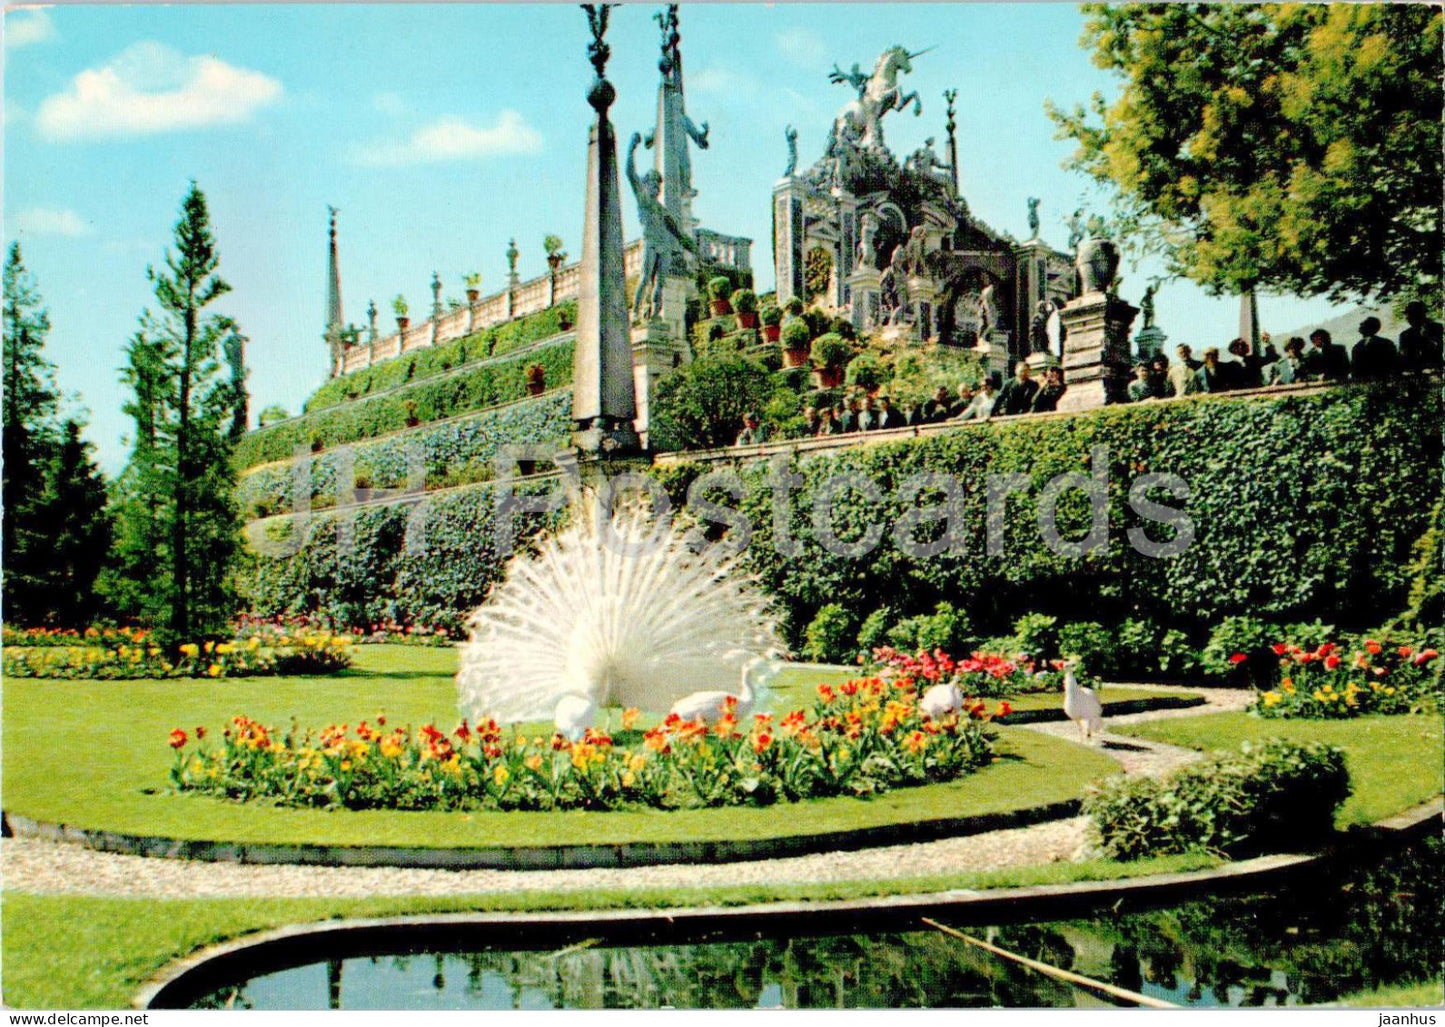 Lago Maggiore - Isola Bella - Giardini e Terrazze - lake - Gardens and Terraces - 33 - 1984 - Italy - used - JH Postcards